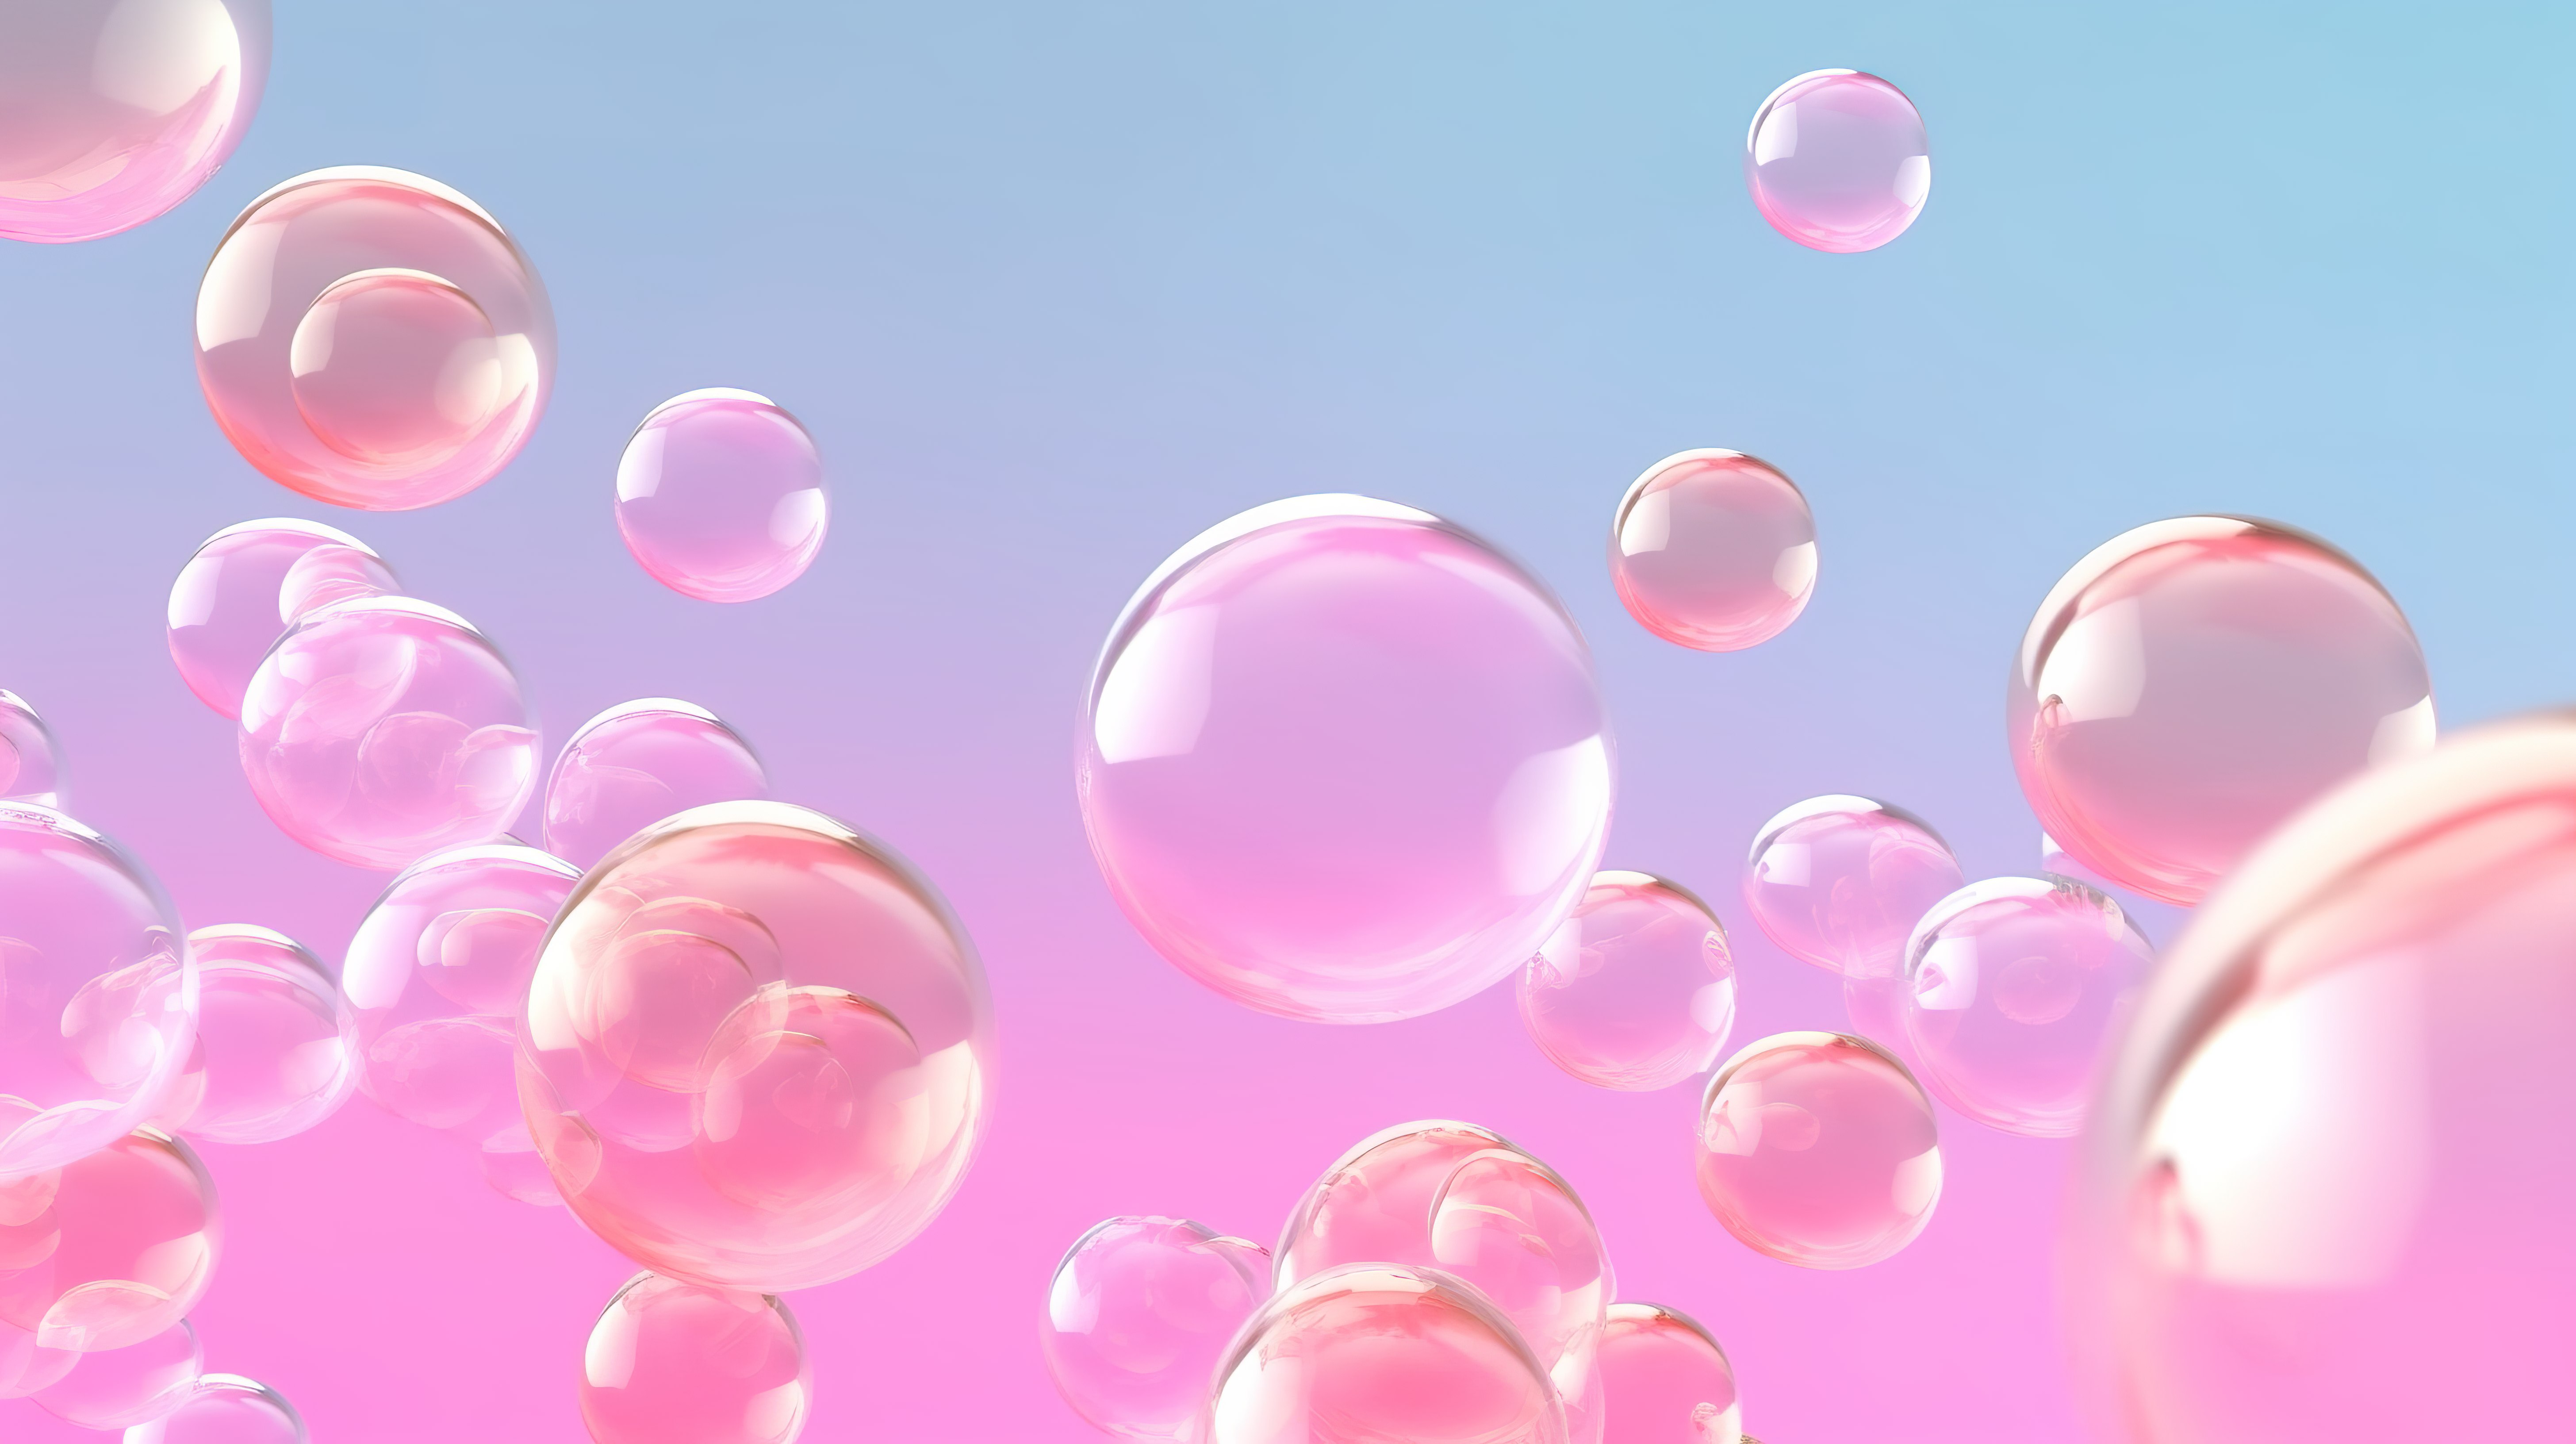 柔和的粉红色背景与 3D 肥皂泡全景渲染图像图片